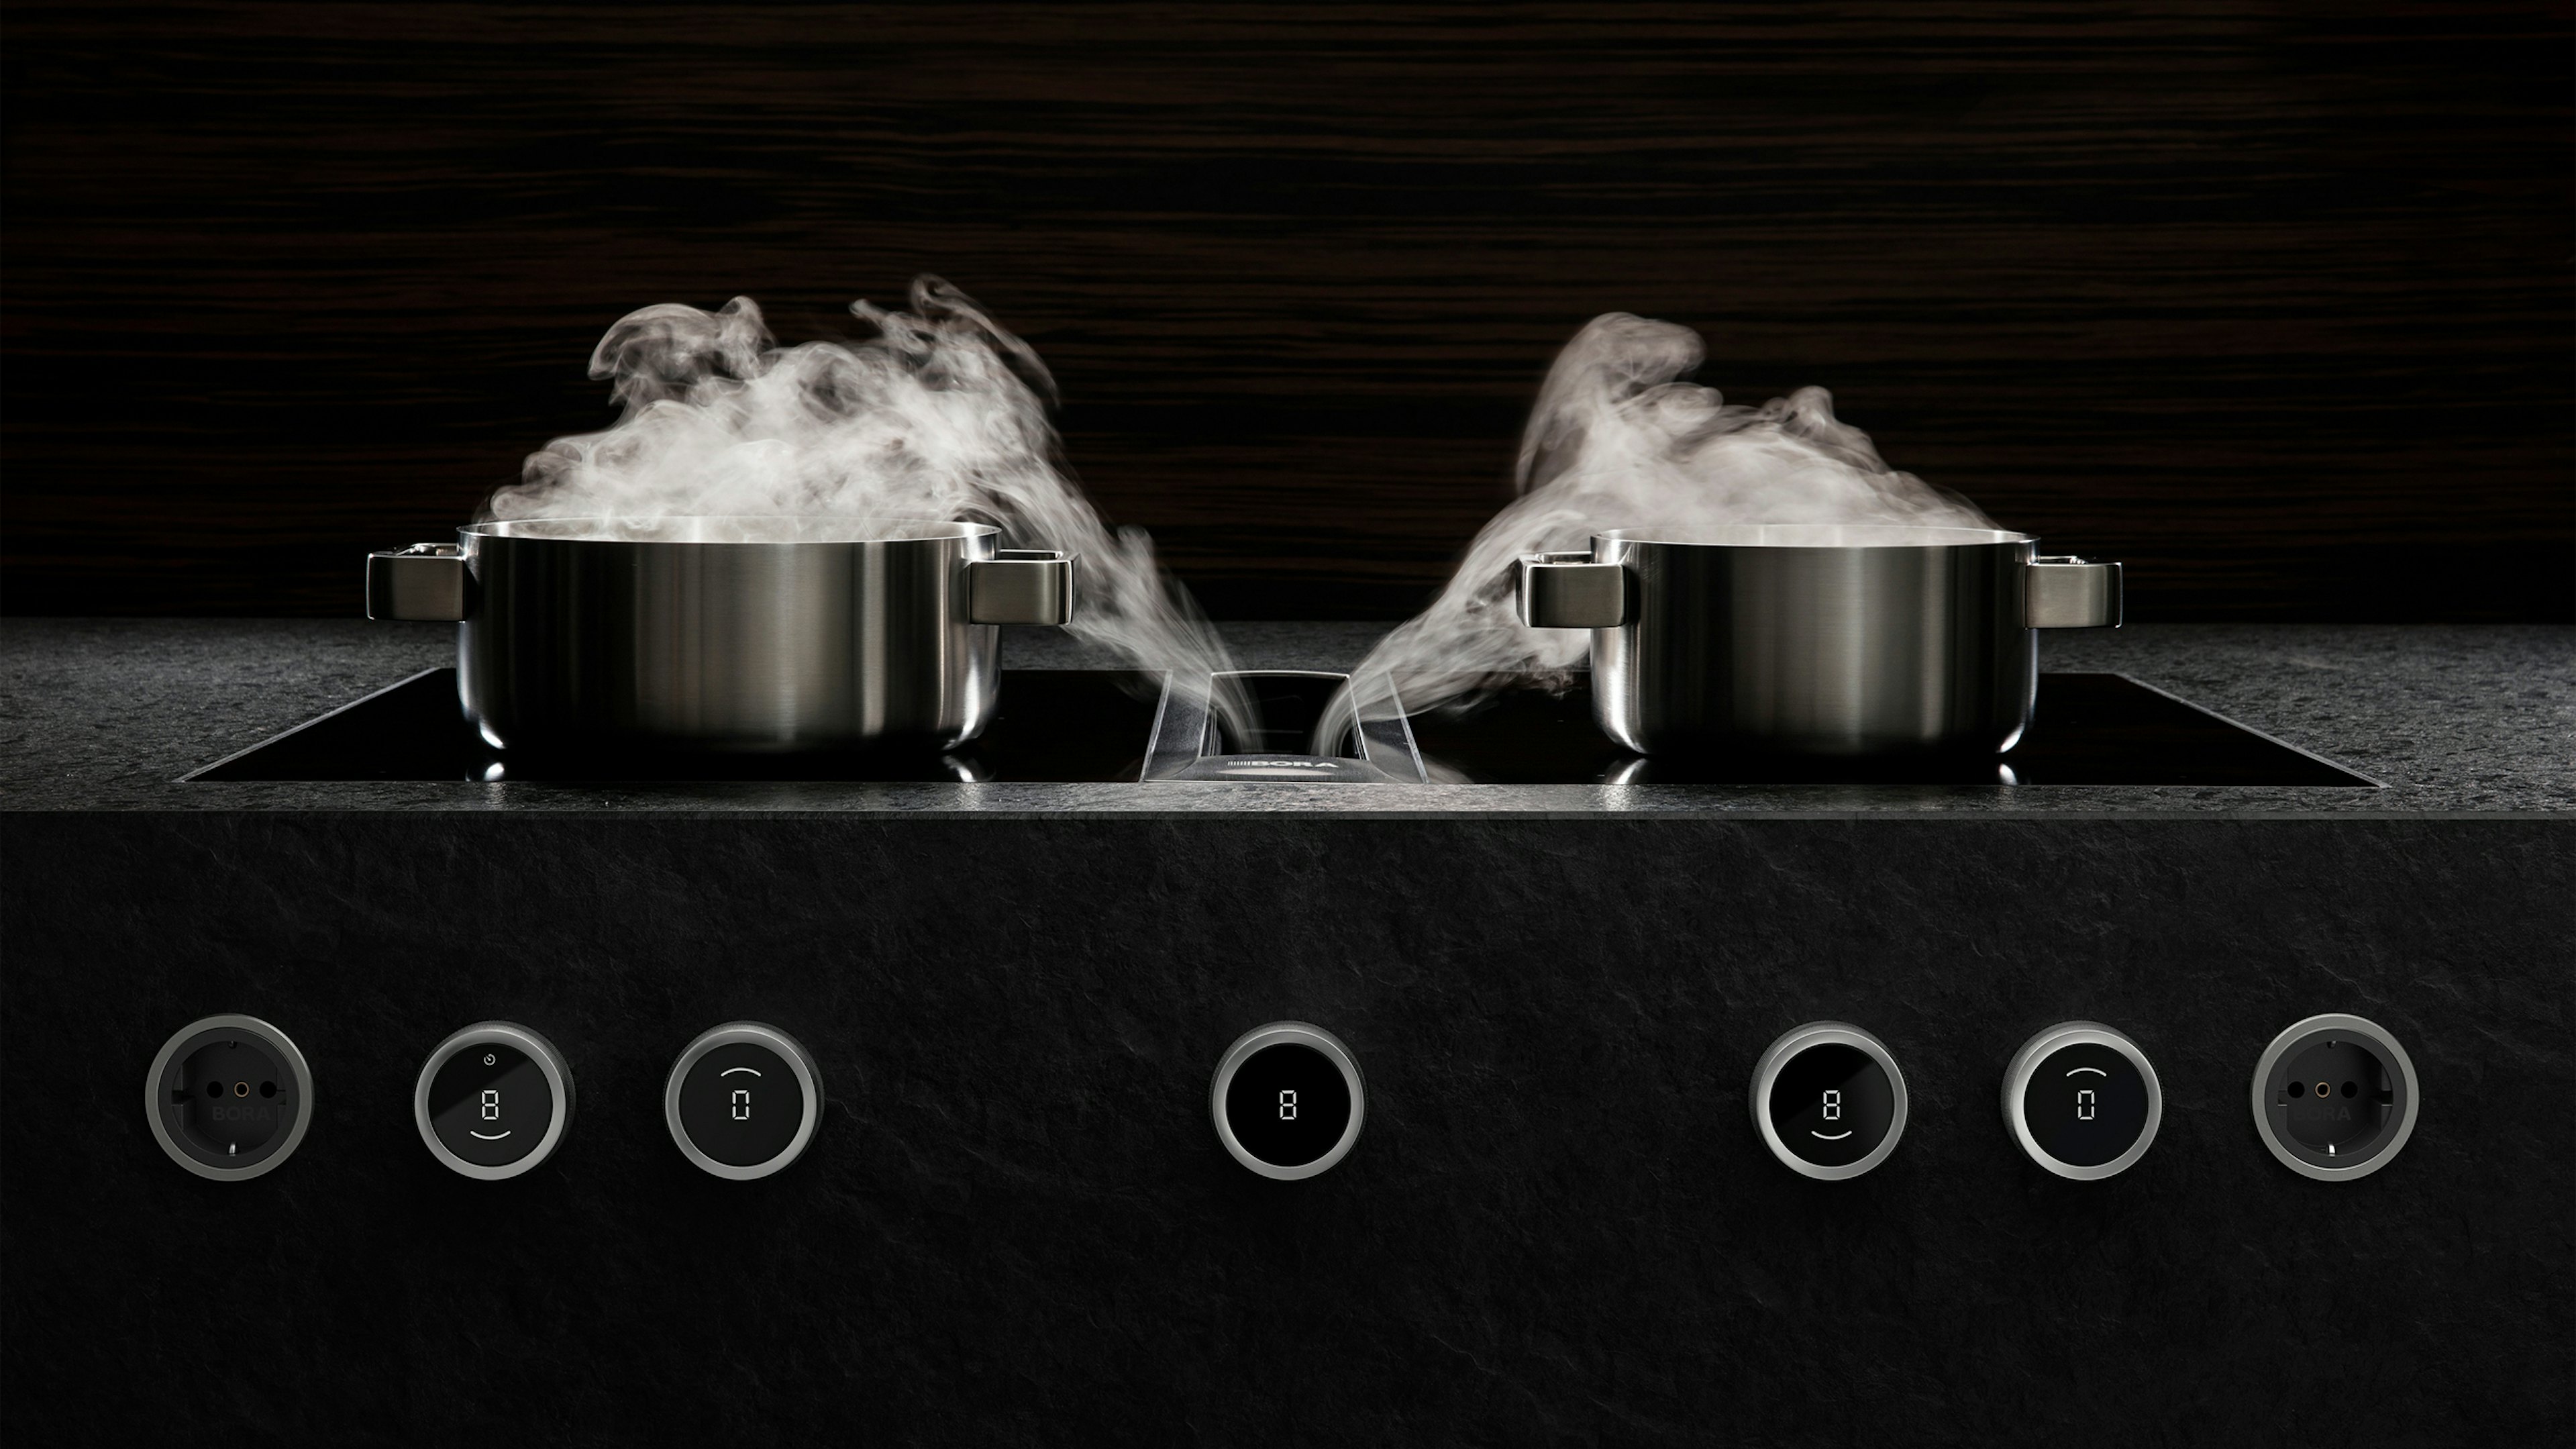 Video effect BORA Professional 3.0 kookplaat met afzuiging.